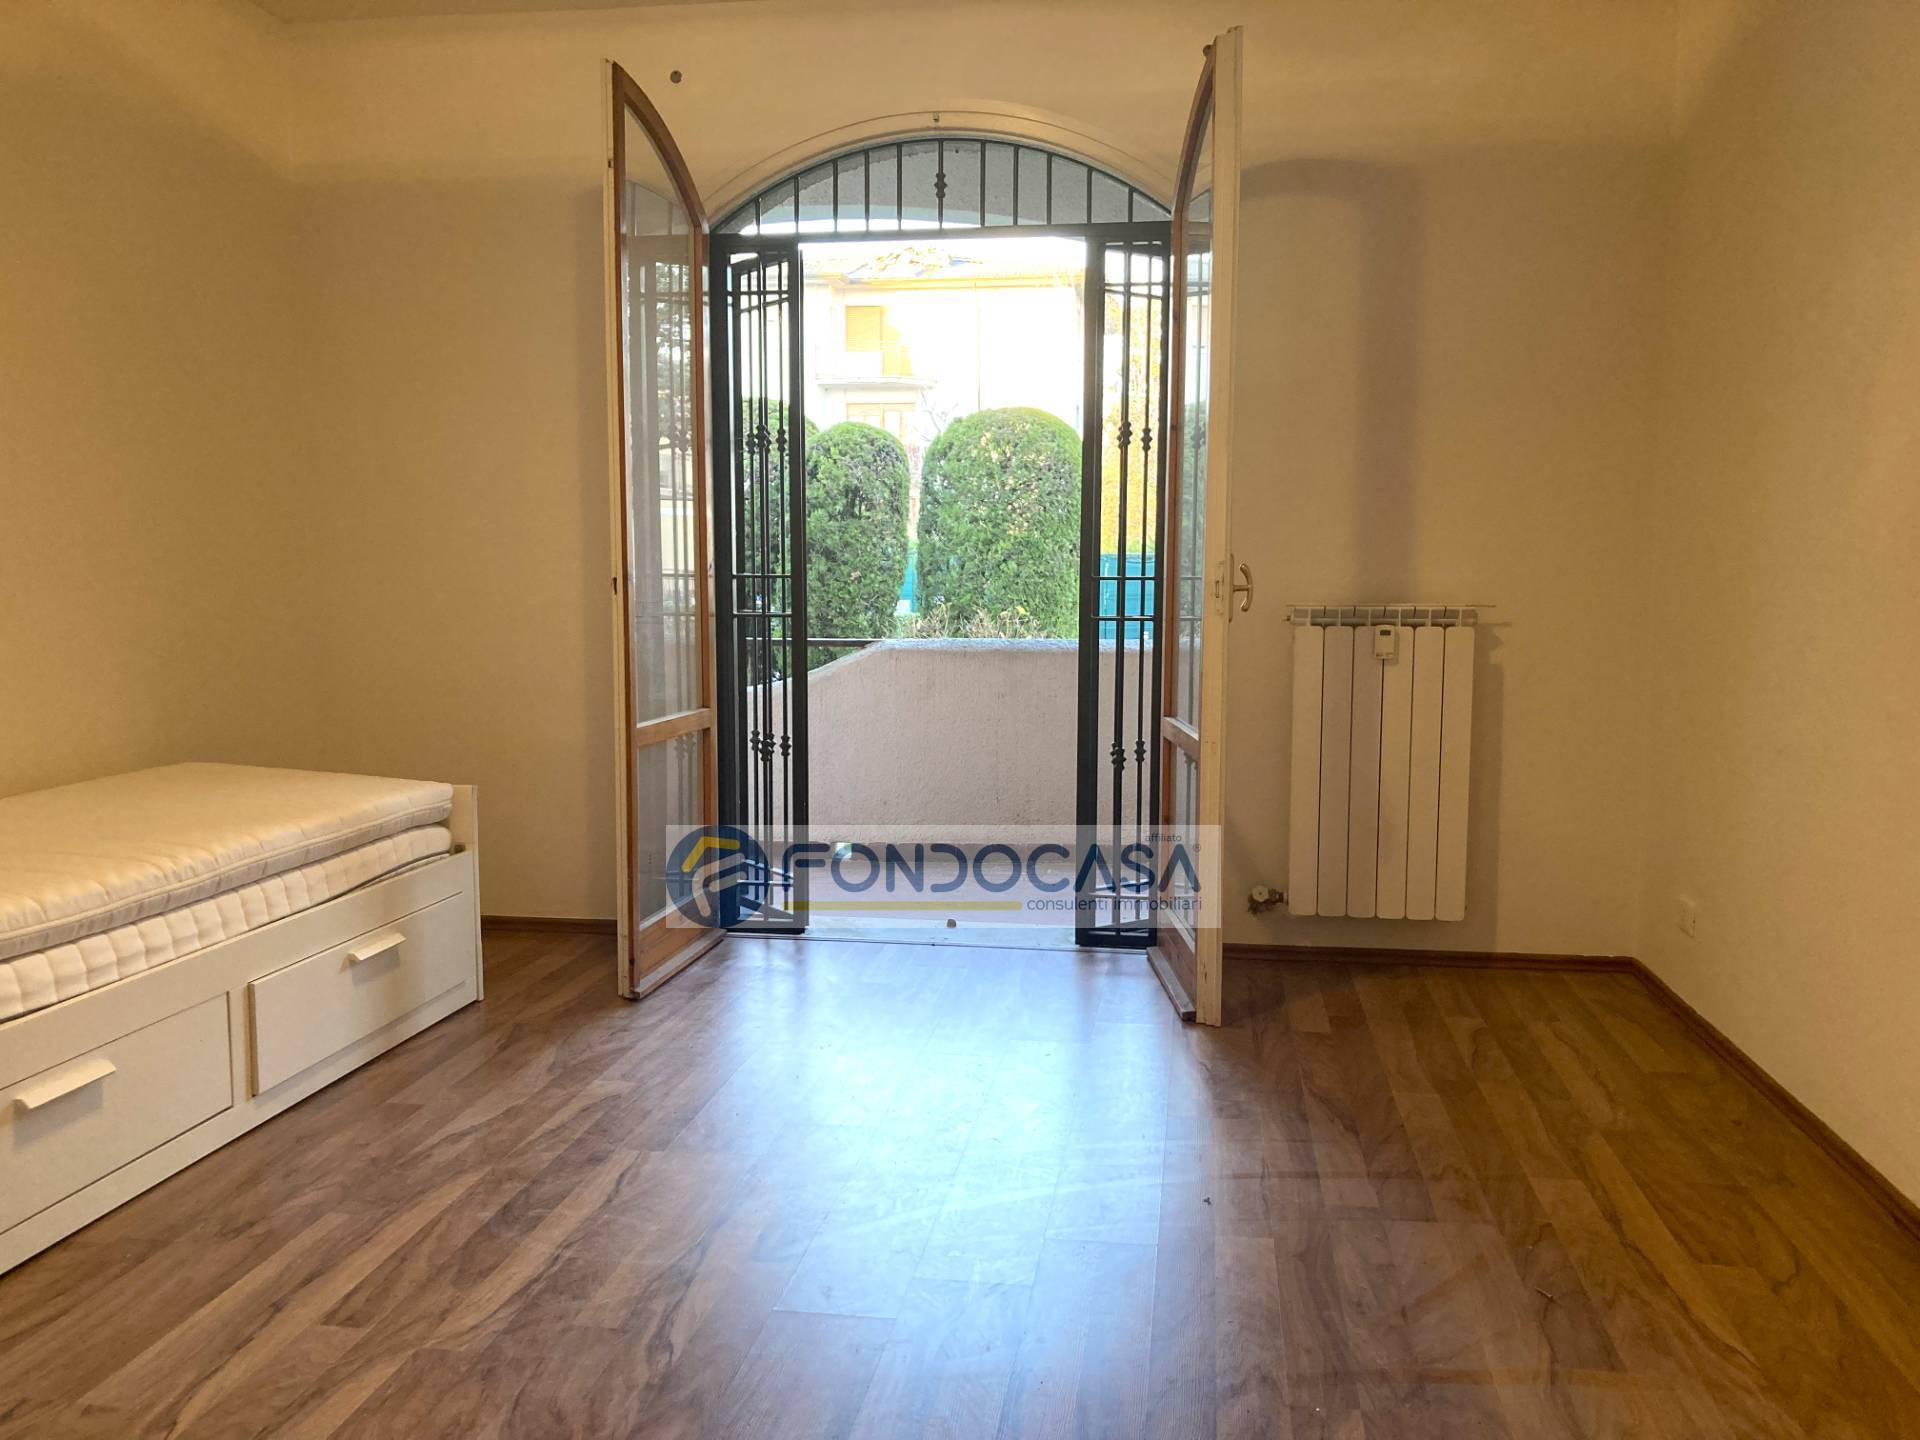 Appartamento in vendita a Peschiera del Garda, 2 locali, zona Località: Peschiera, prezzo € 175.000 | PortaleAgenzieImmobiliari.it